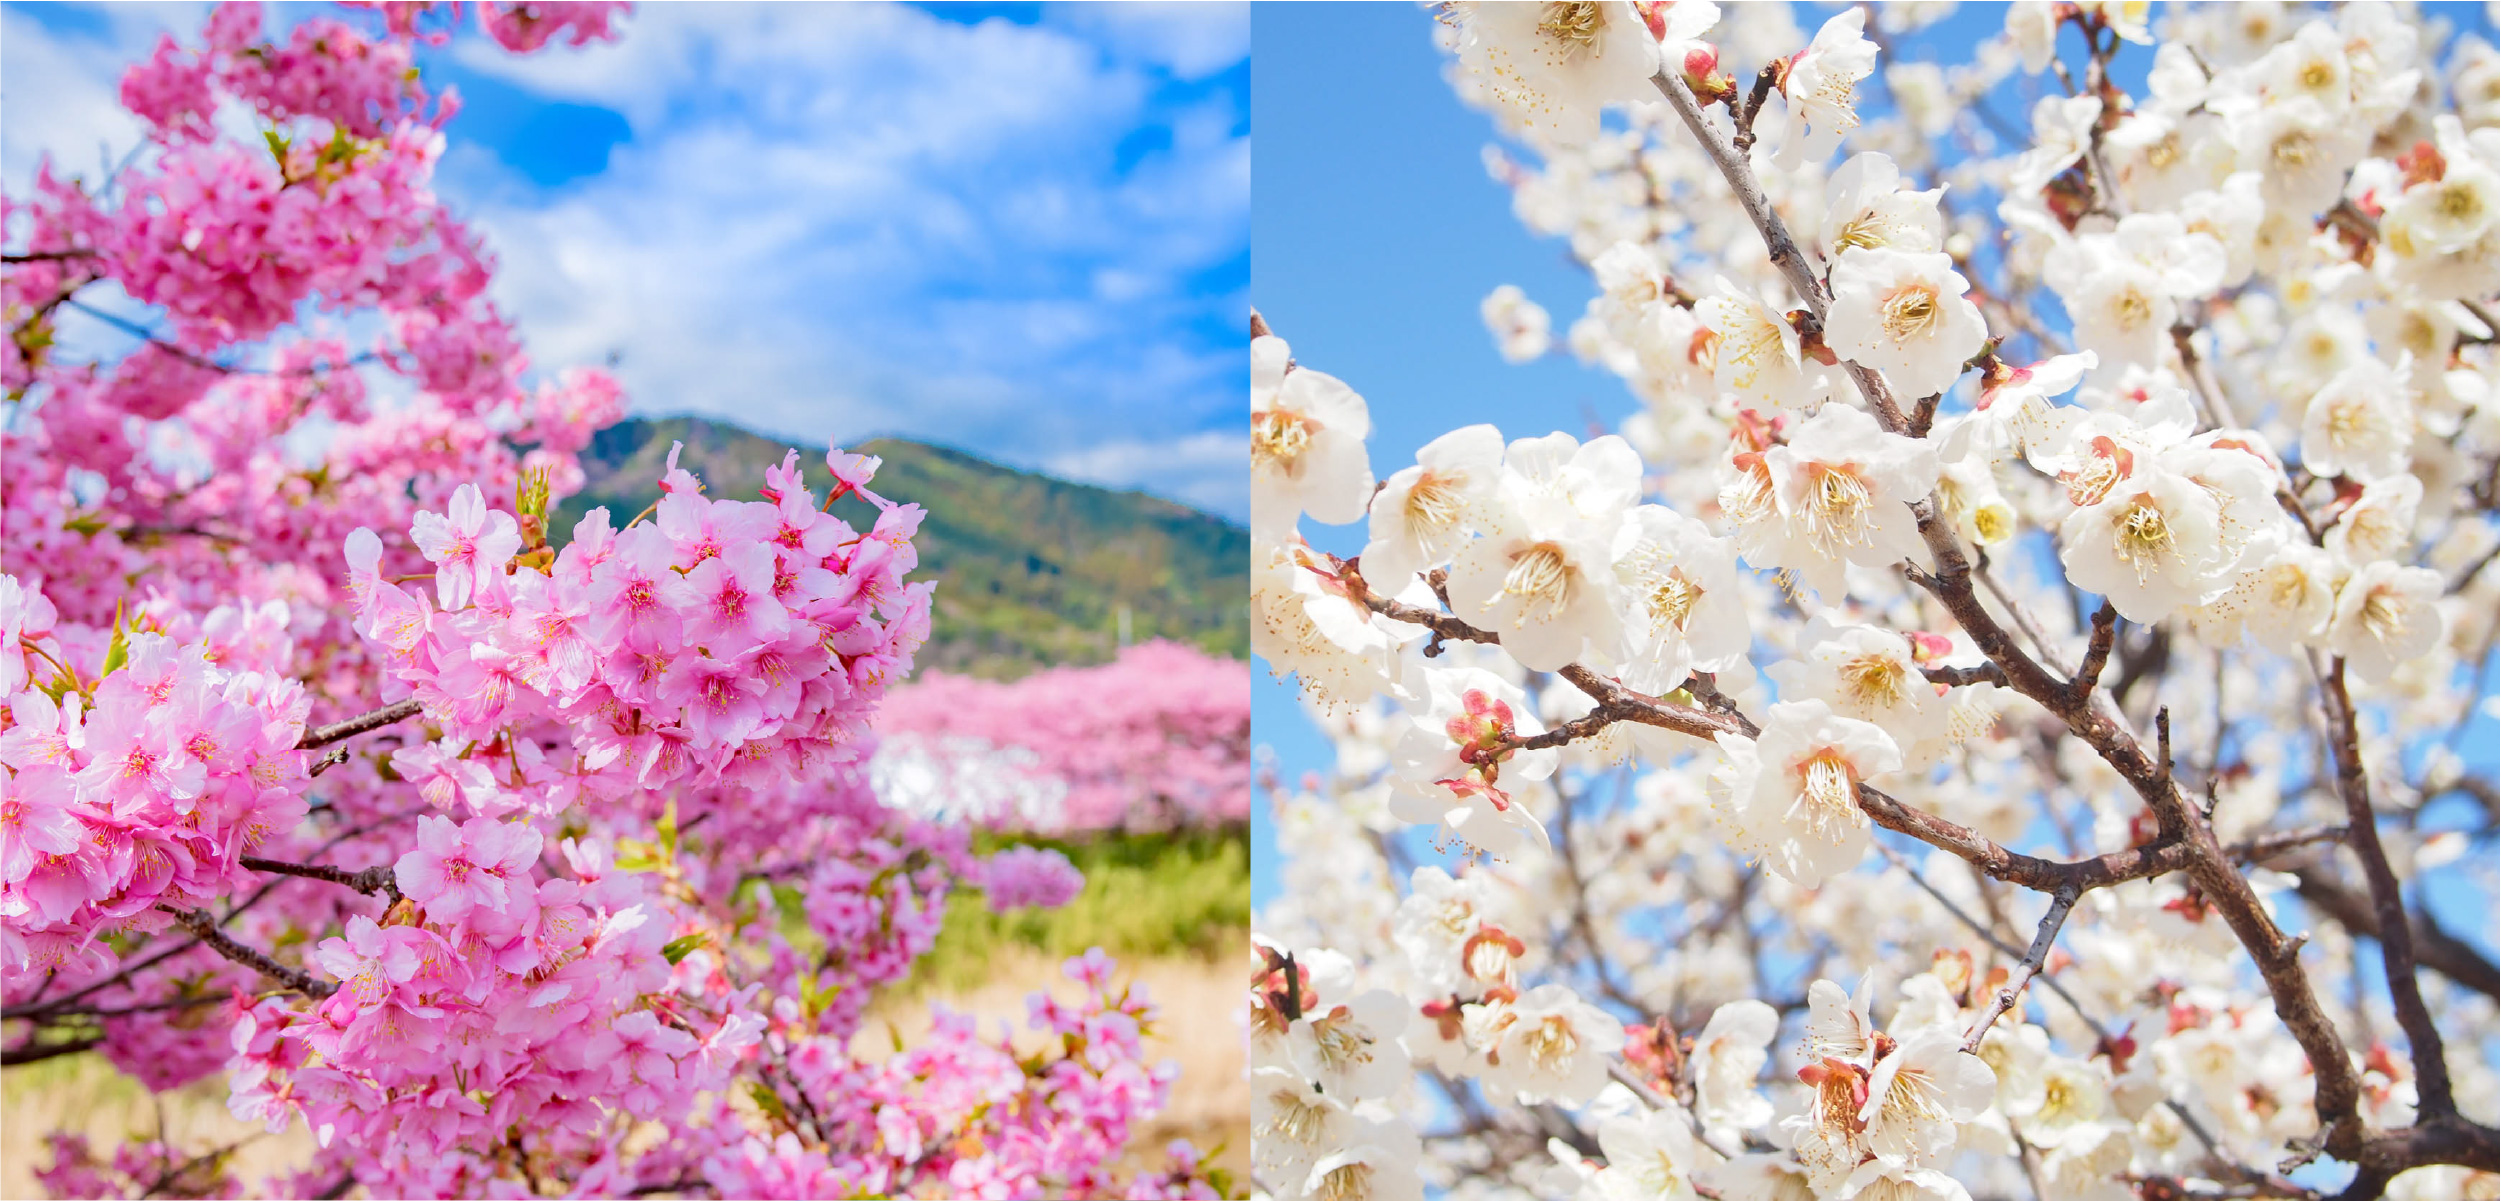 熱海の梅まつり、湯河原の梅林、伊豆の河津桜を見に行こう